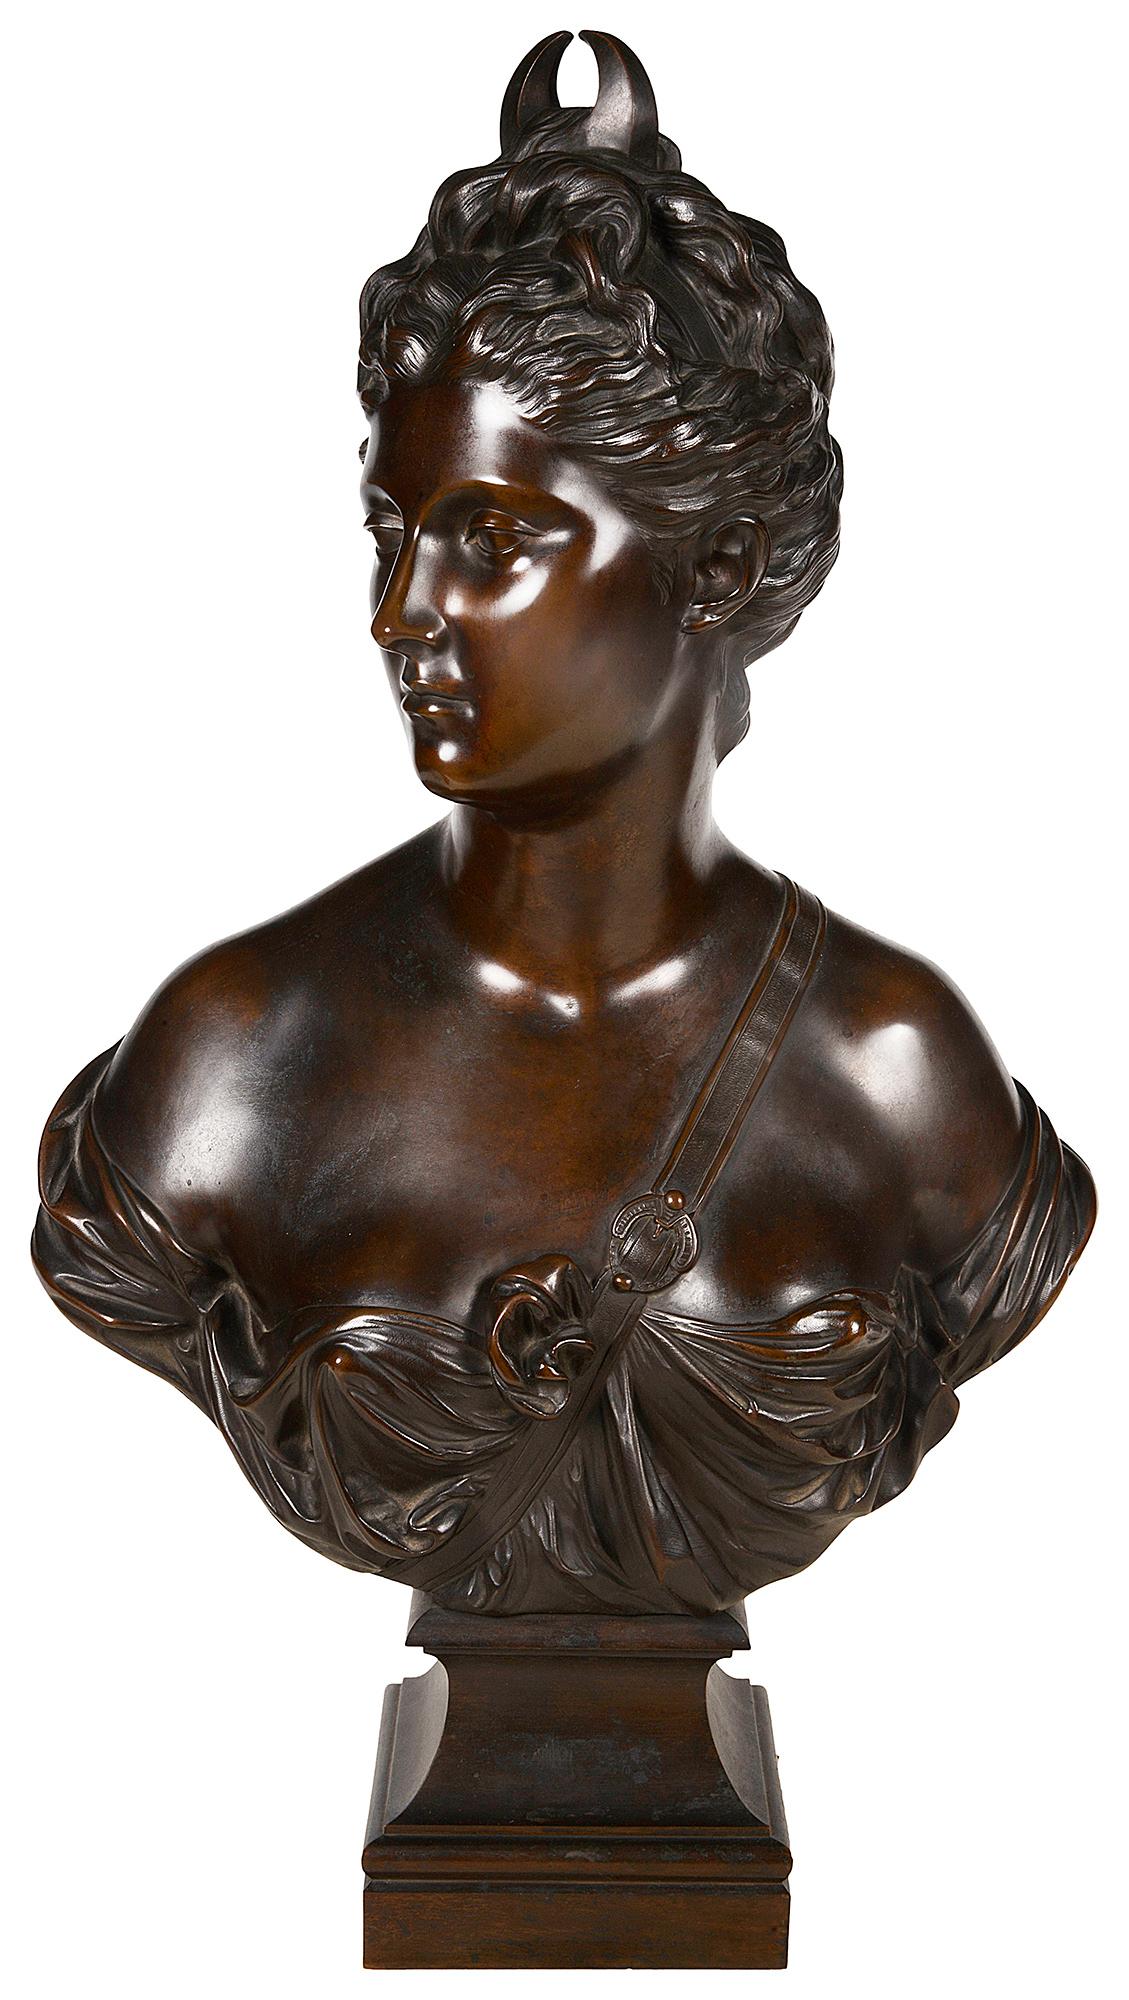 Eine sehr gute Qualität 19. Jahrhundert Bronze patiniert Bronzebüste von Diana, auf einem Sockel erhöht.

Diana ist eine Göttin in der römischen und hellenistischen Religion, die vor allem als Schutzherrin des Landes, der Jäger, der Kreuzungen und